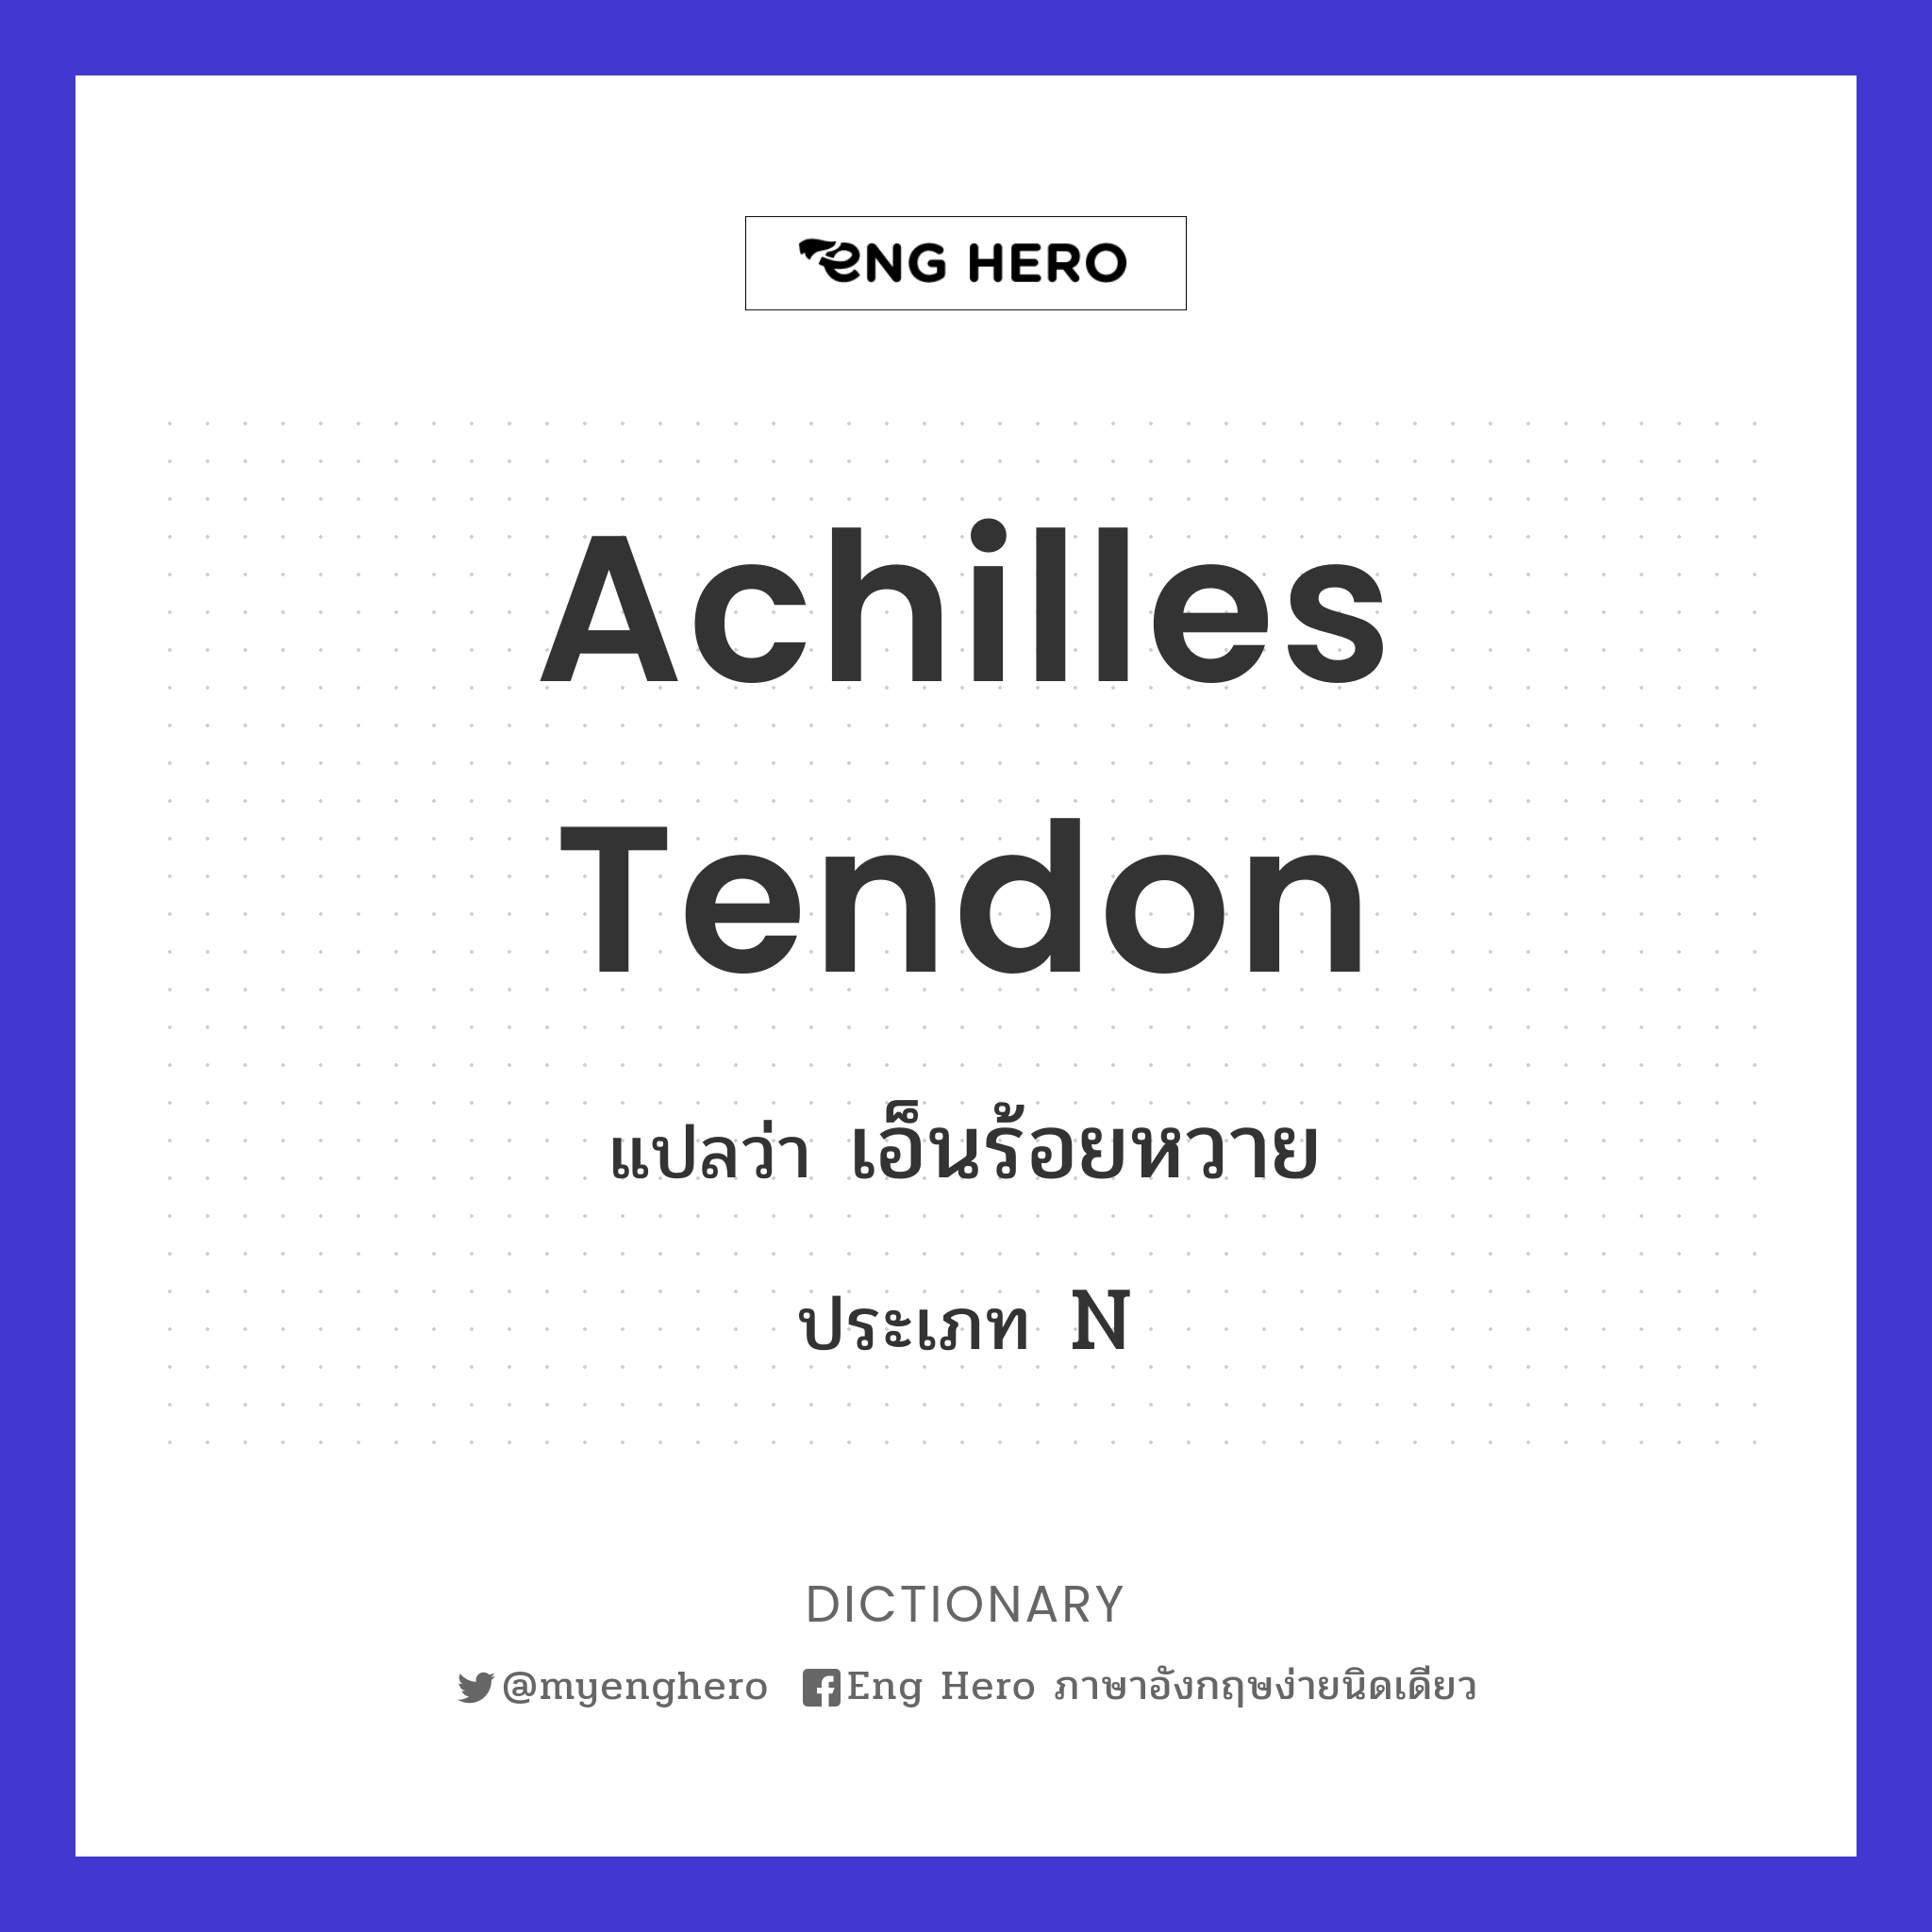 Achilles tendon